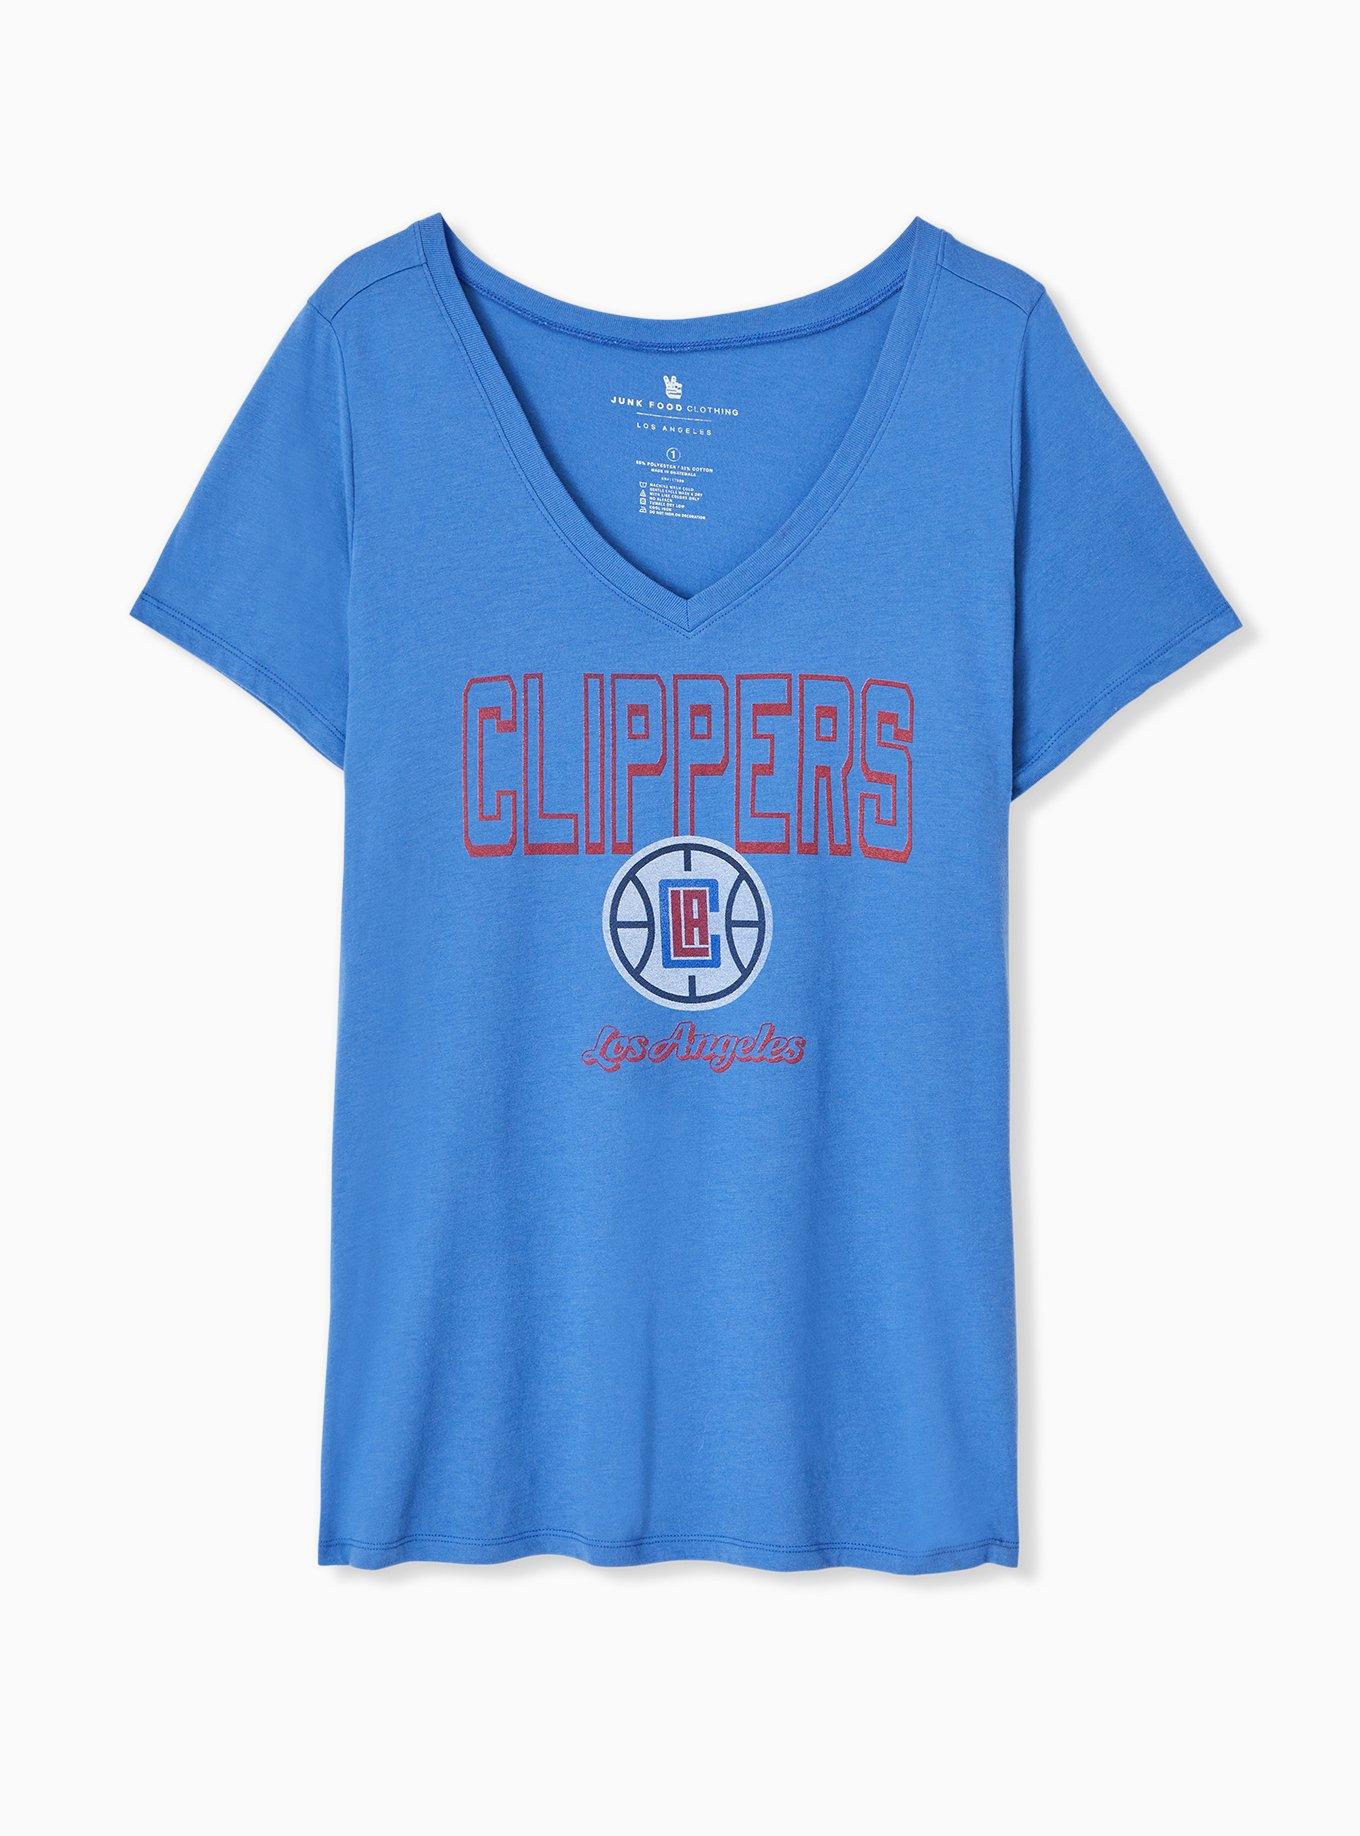 La Clippers NBA License T Shirt